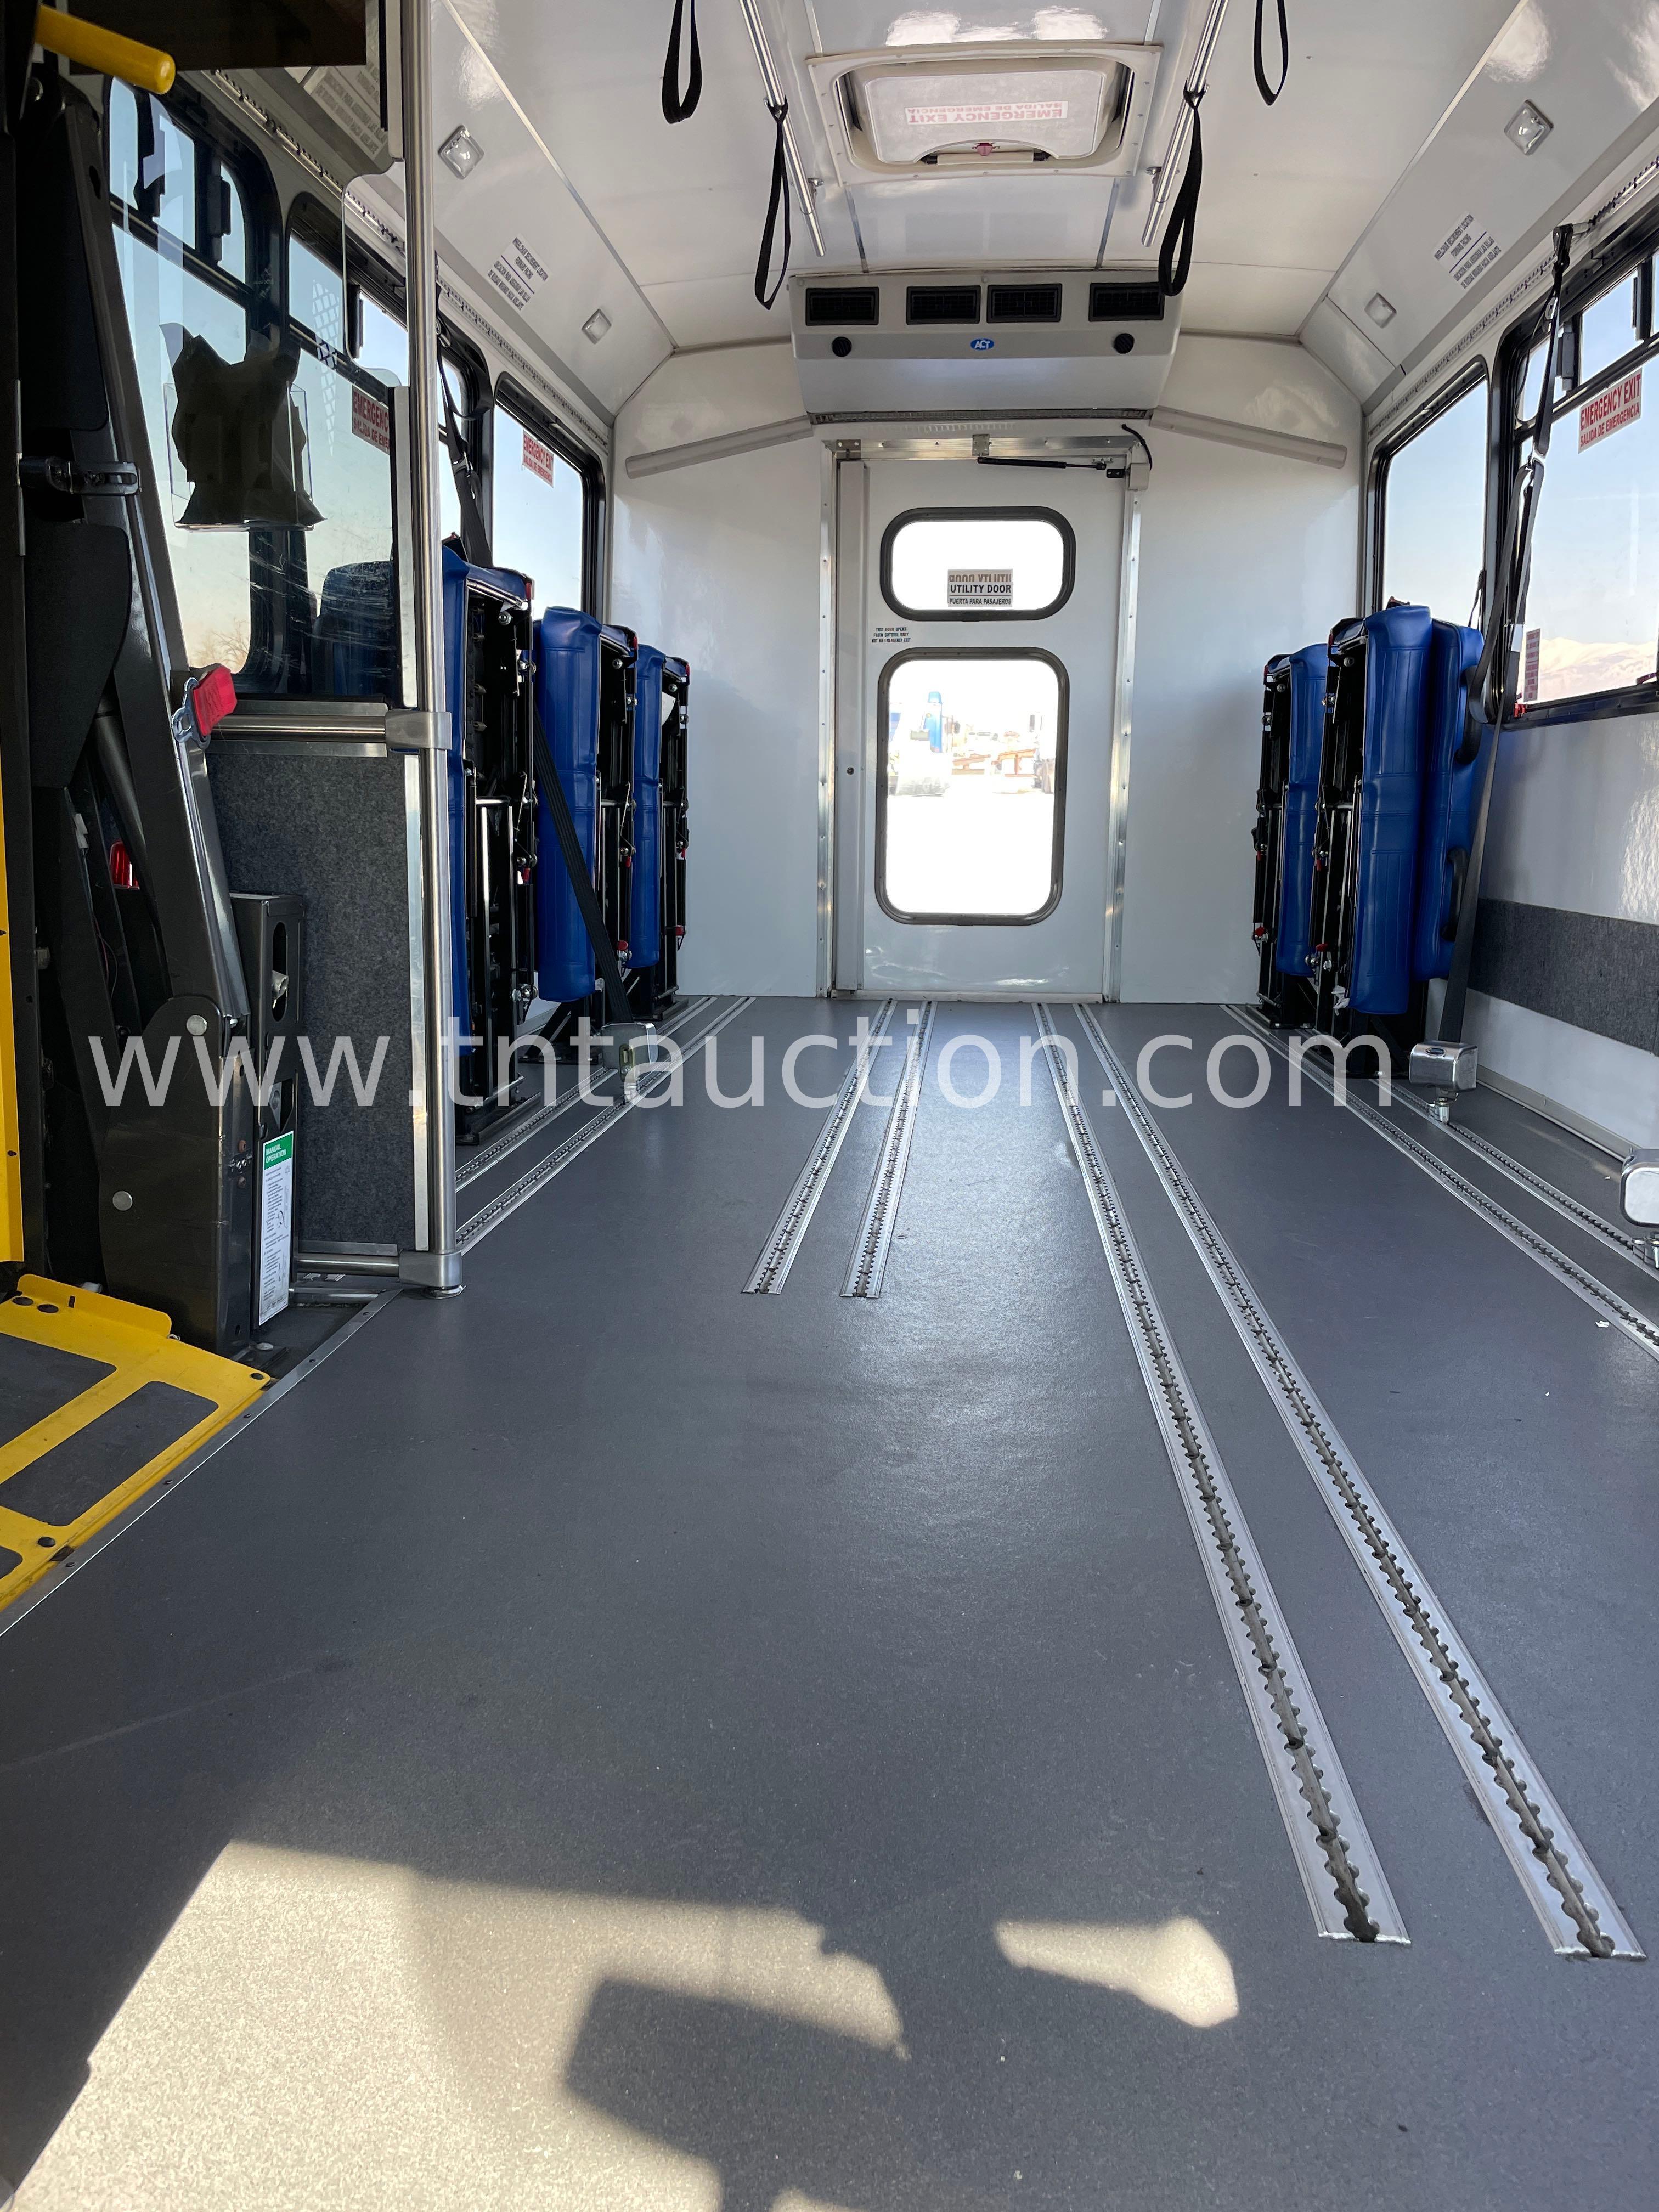 2013 Chev 4500 Bus